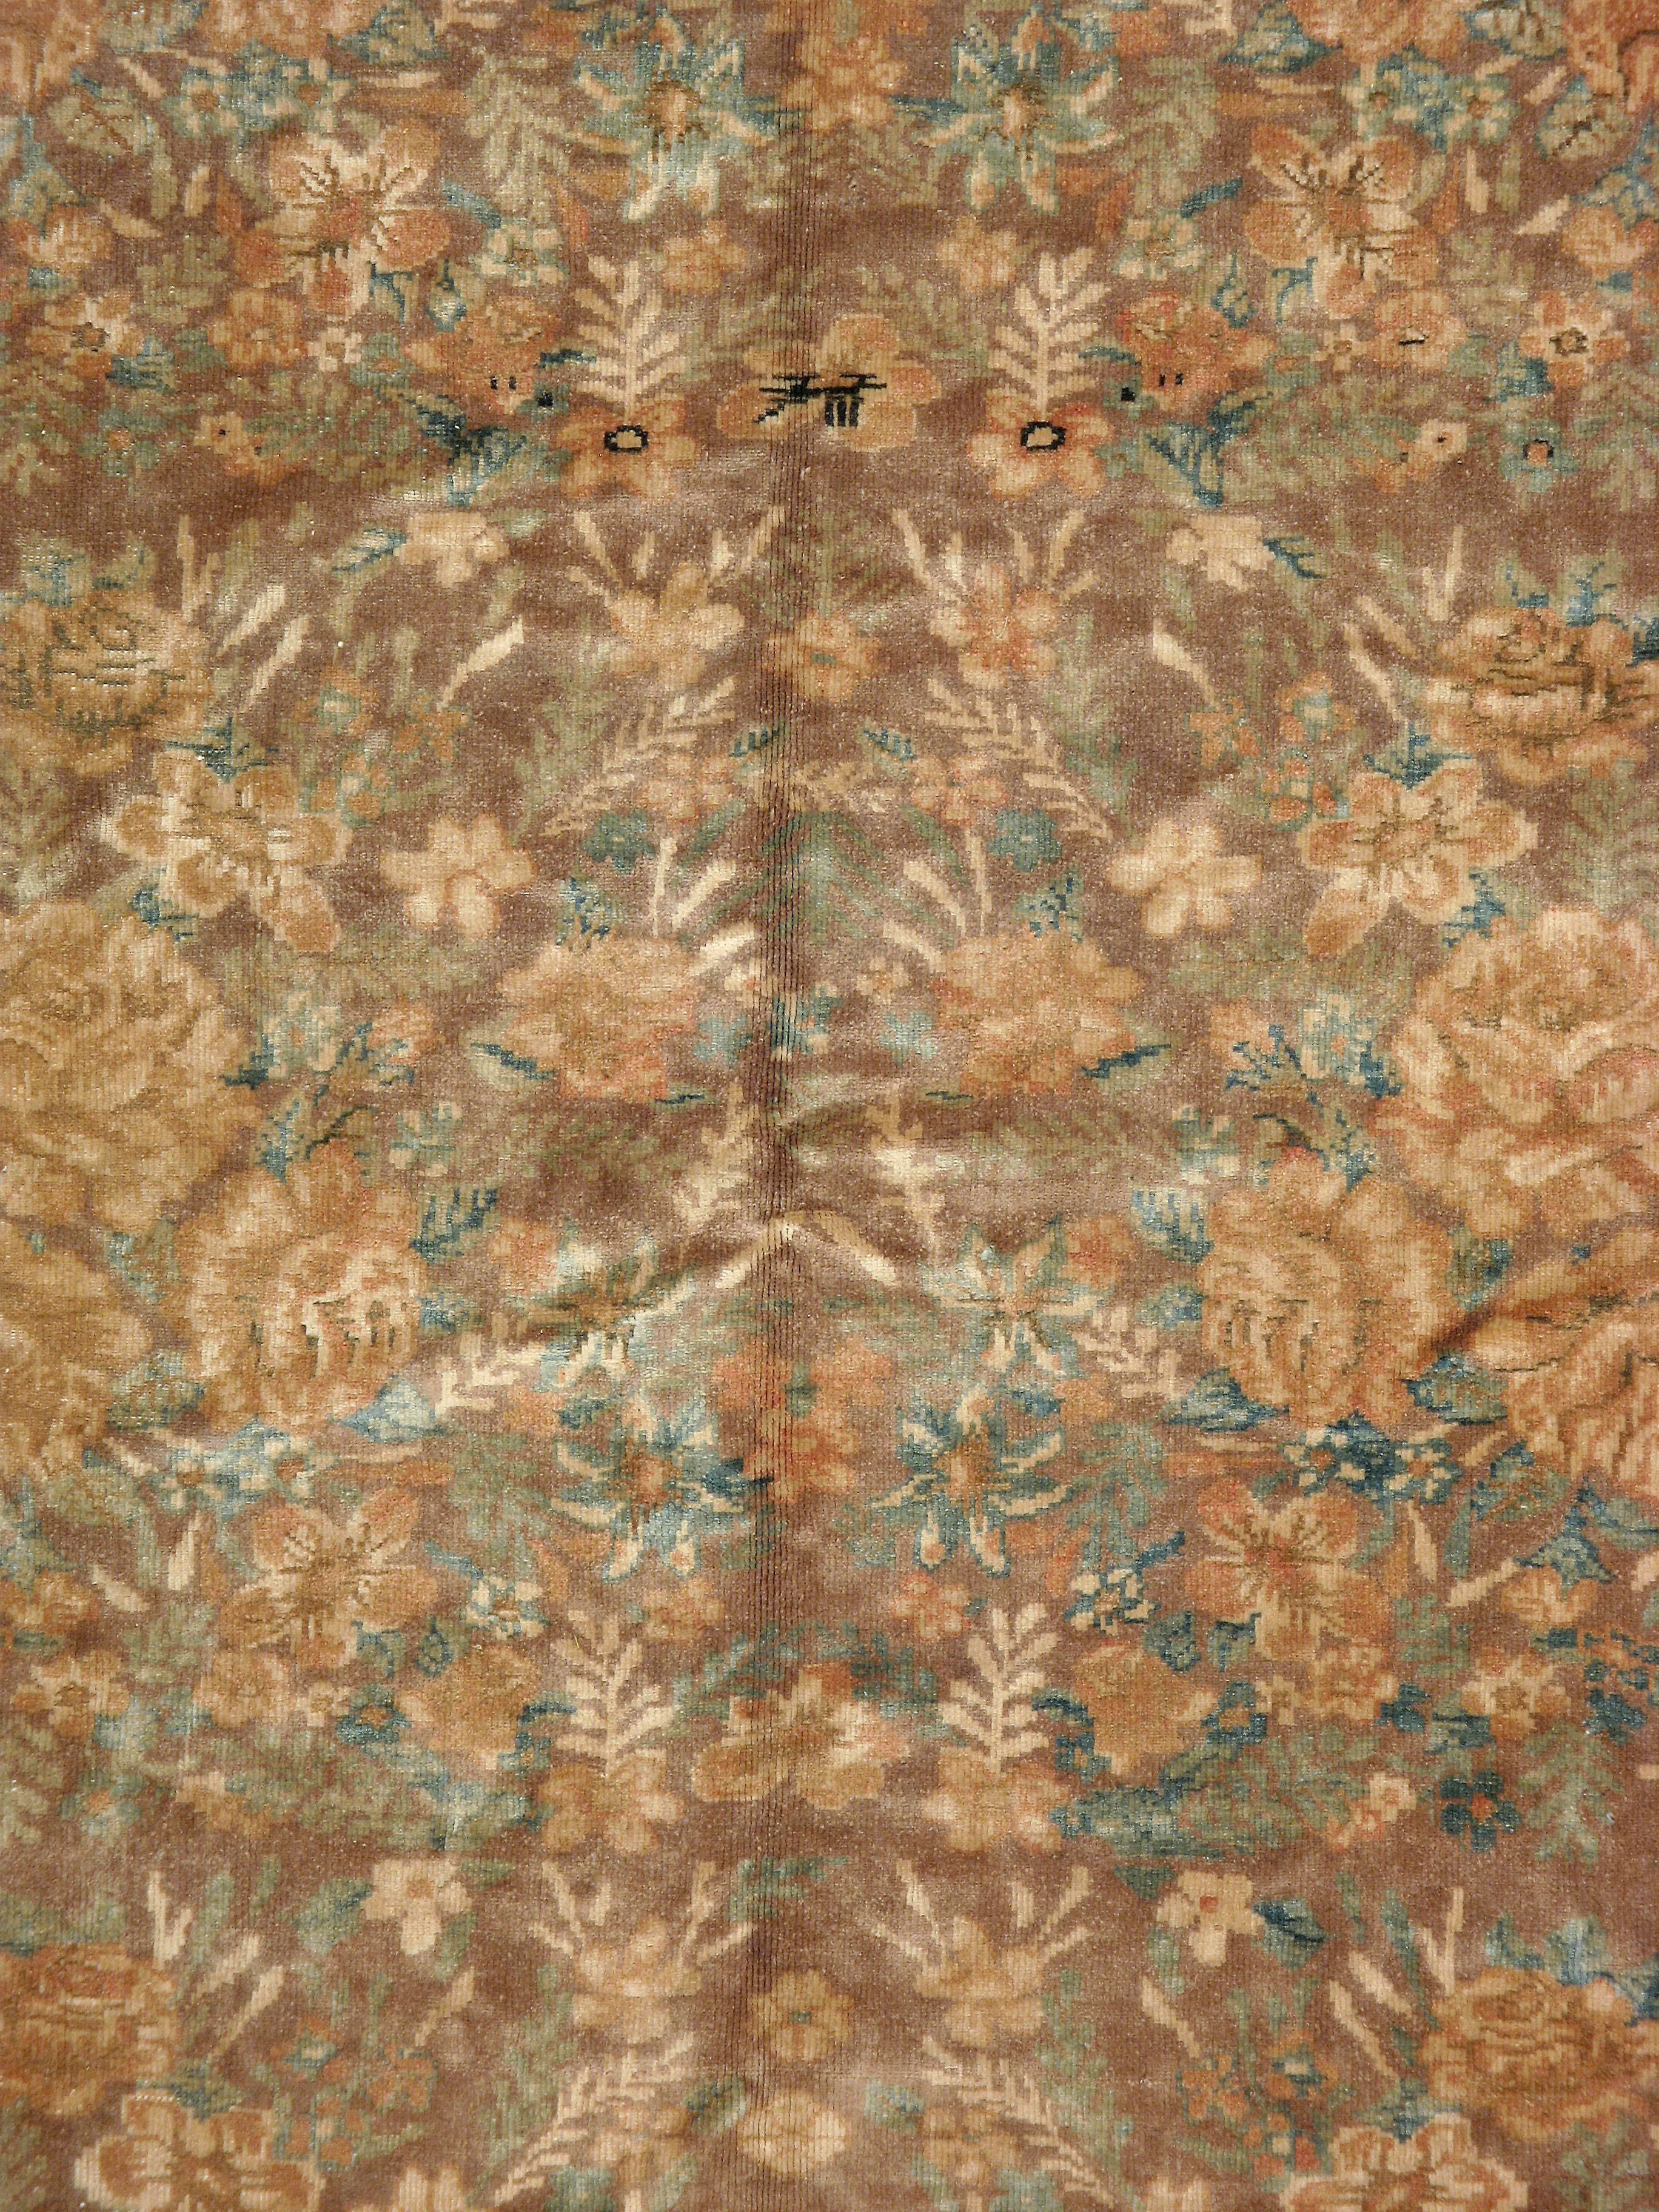 Ein alter russischer Karabagh-Teppich aus dem zweiten Viertel des 20. Jahrhunderts mit einem eleganten floralen Horror-Vacui-Muster.